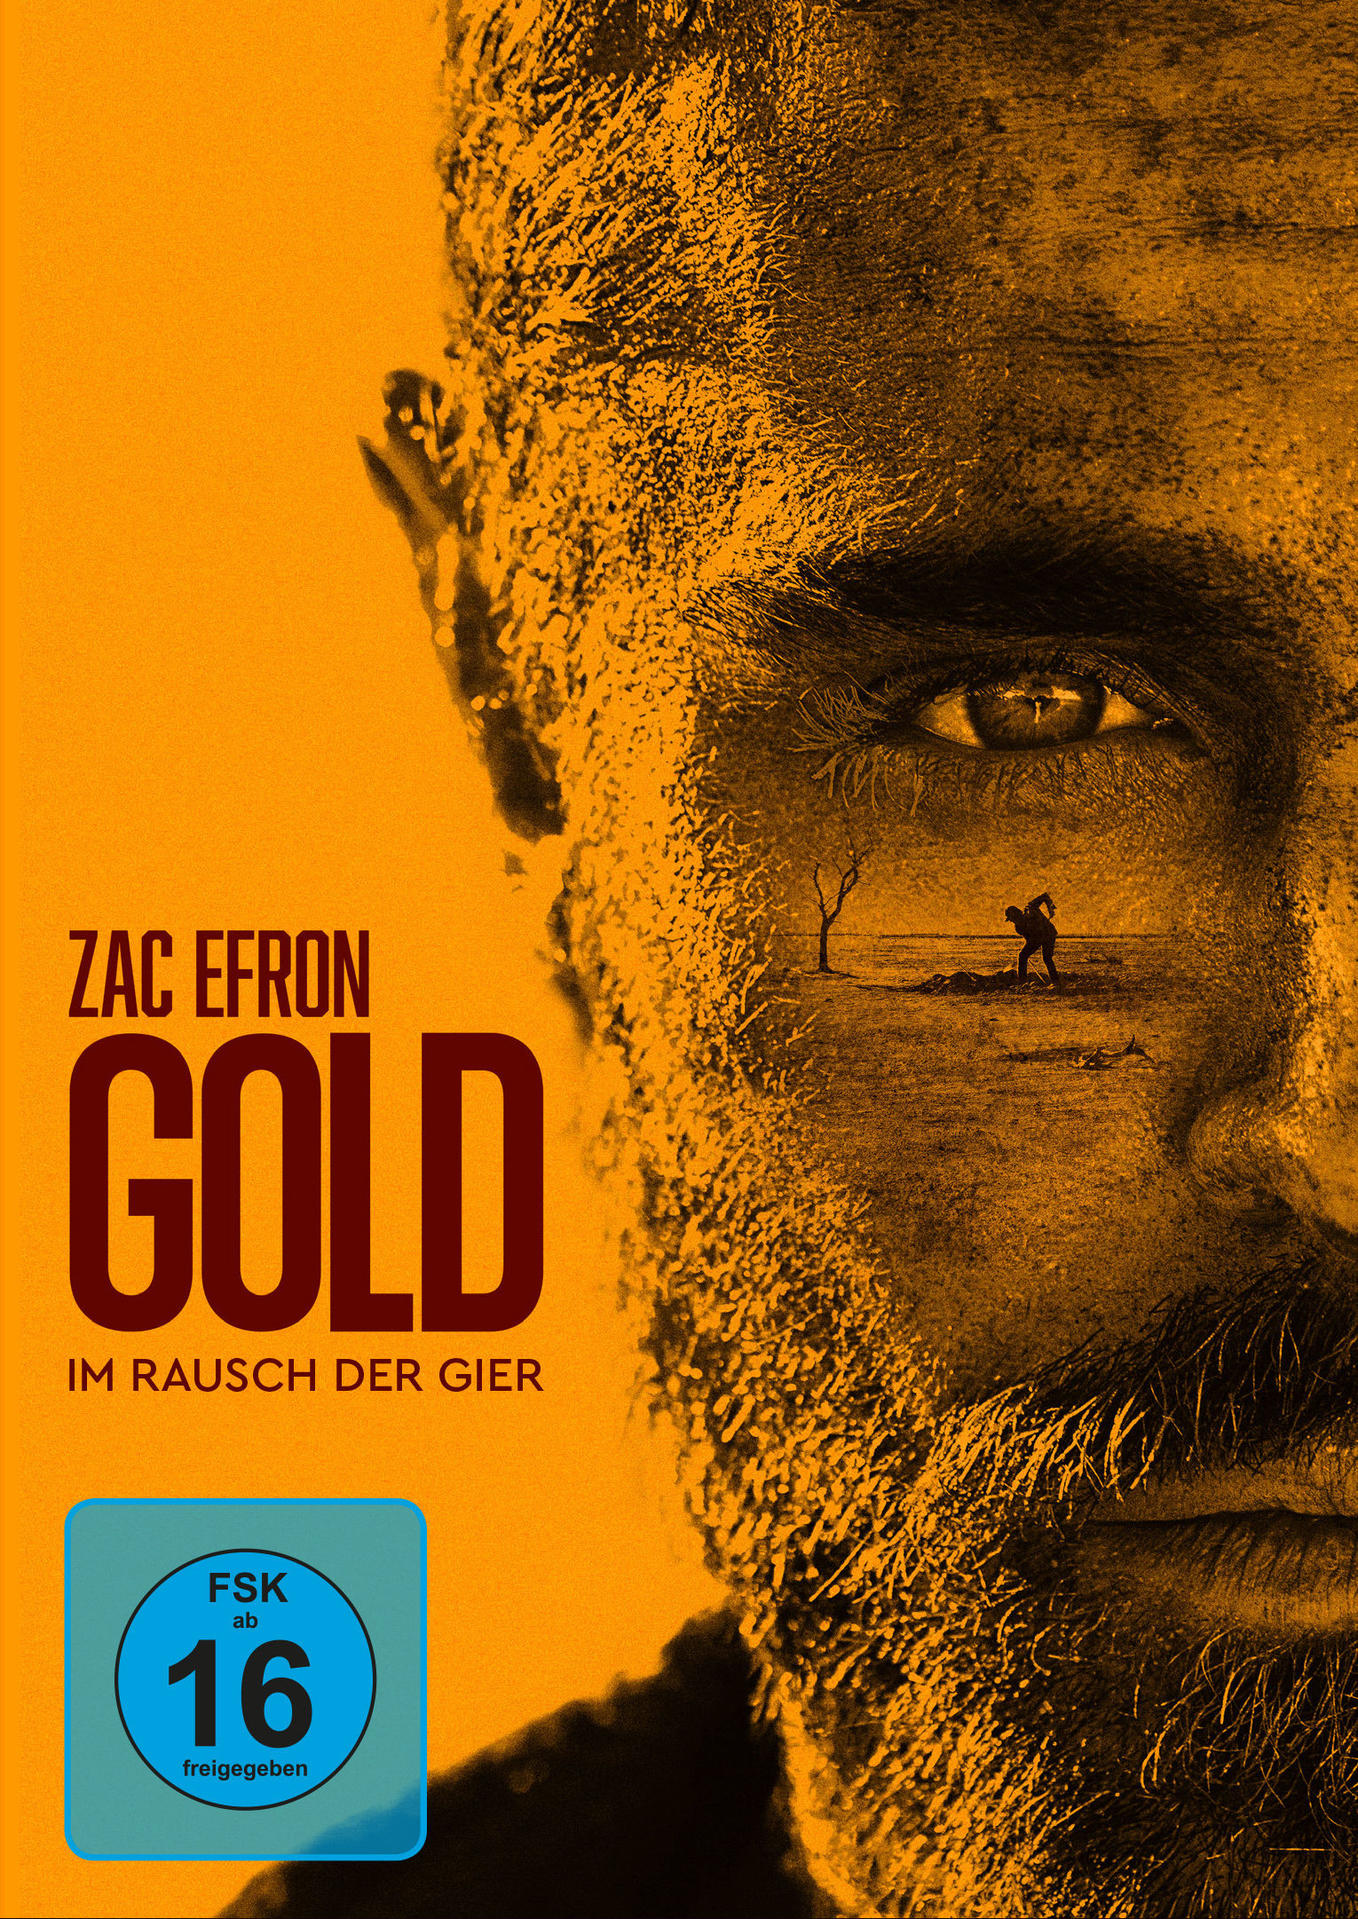 Gold - Im Rausch Gier der DVD